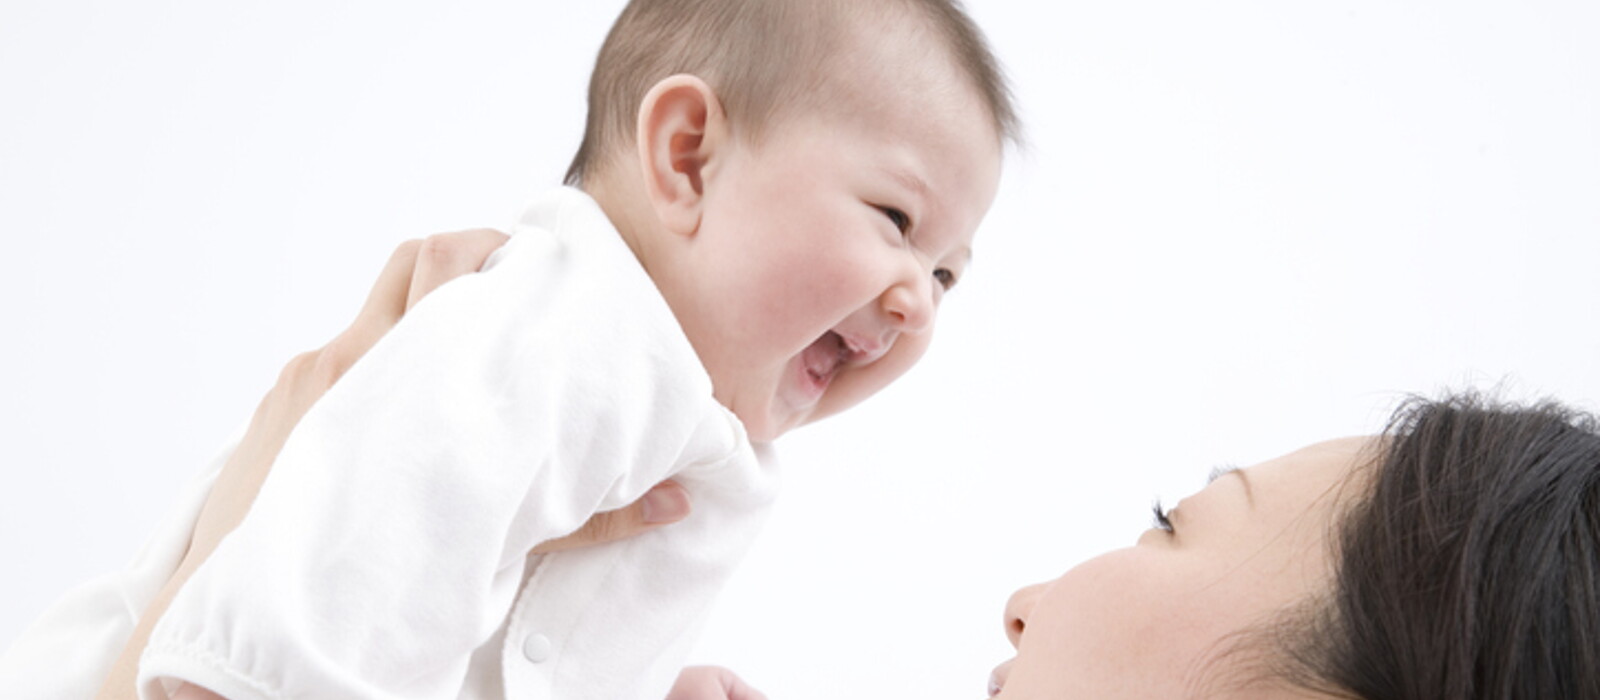 พัฒนาการเด็ก 4 เดือน ทารก 4 เดือน พร้อมวิธีเสริมพัฒนาการลูก